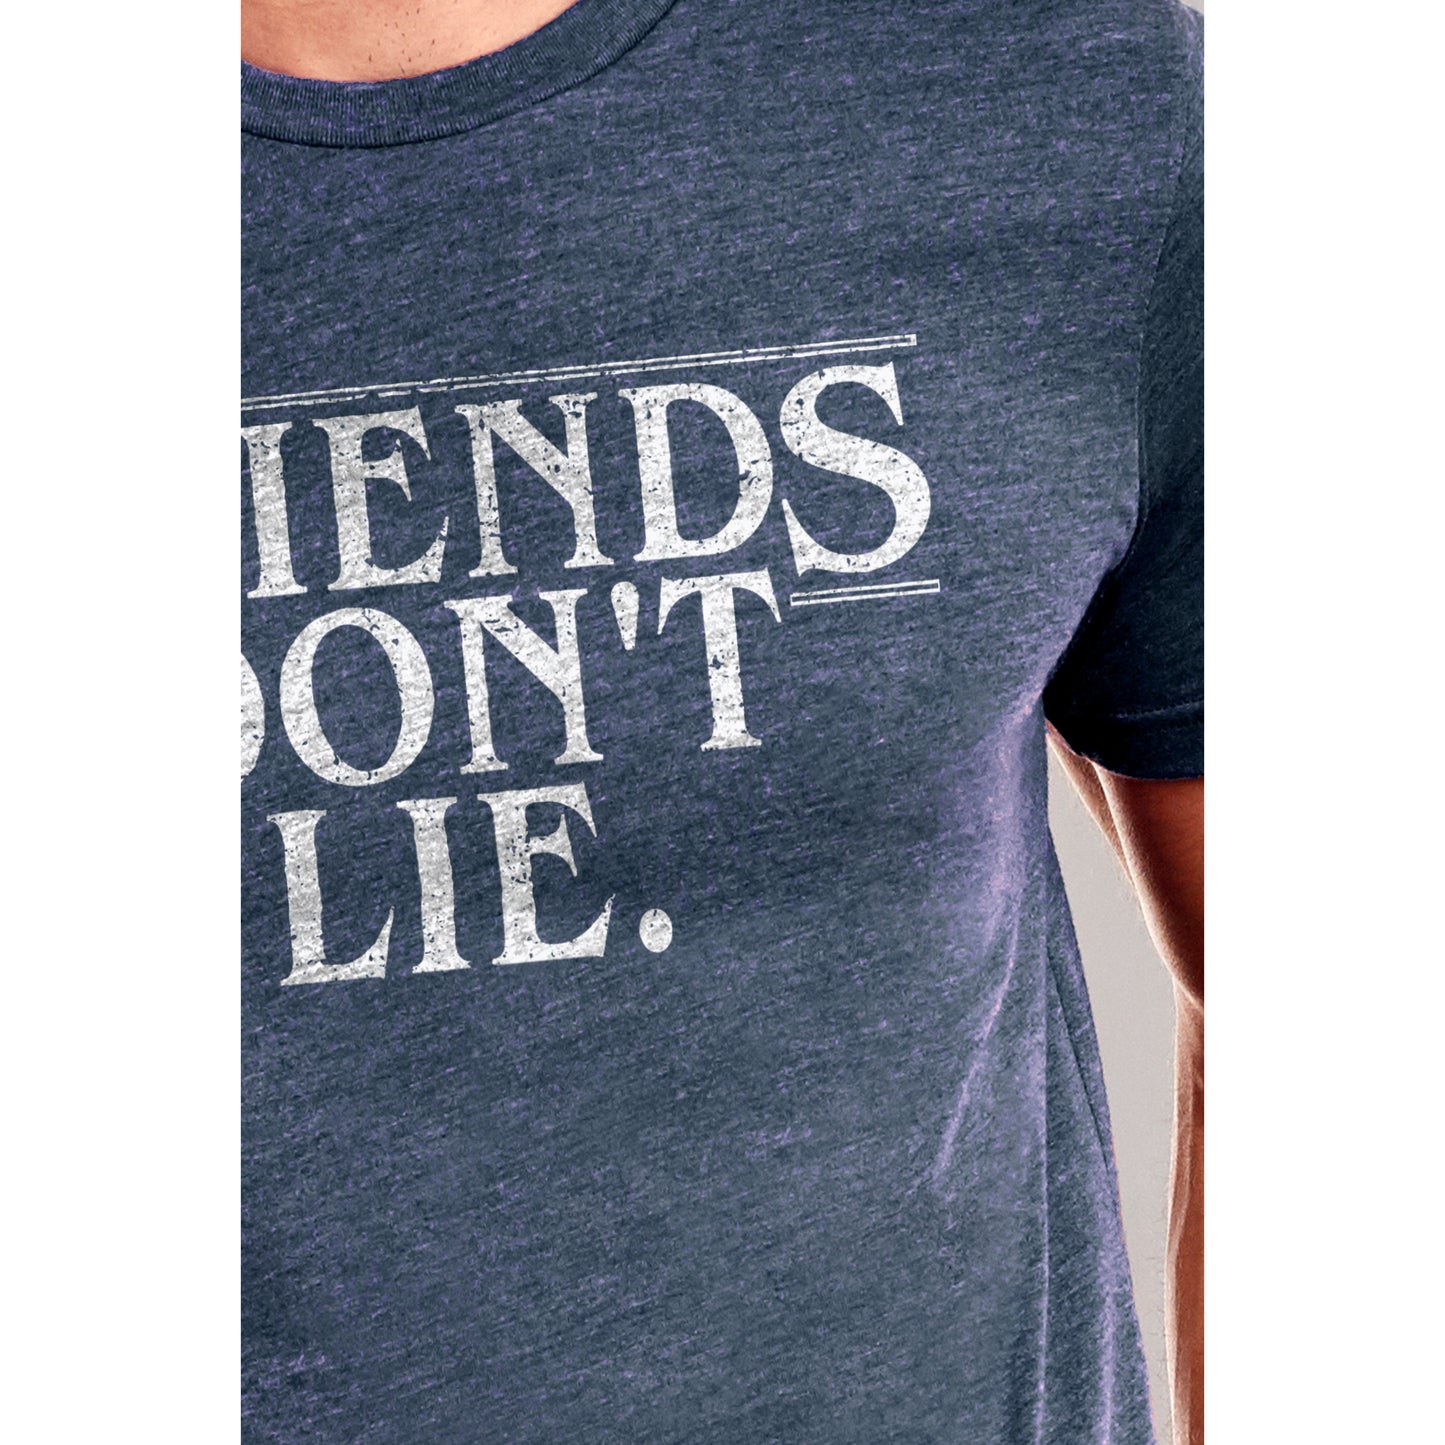 Friends Dont Lie Printed Graphic Men's Crew T-Shirt Vintage White Closeup Image